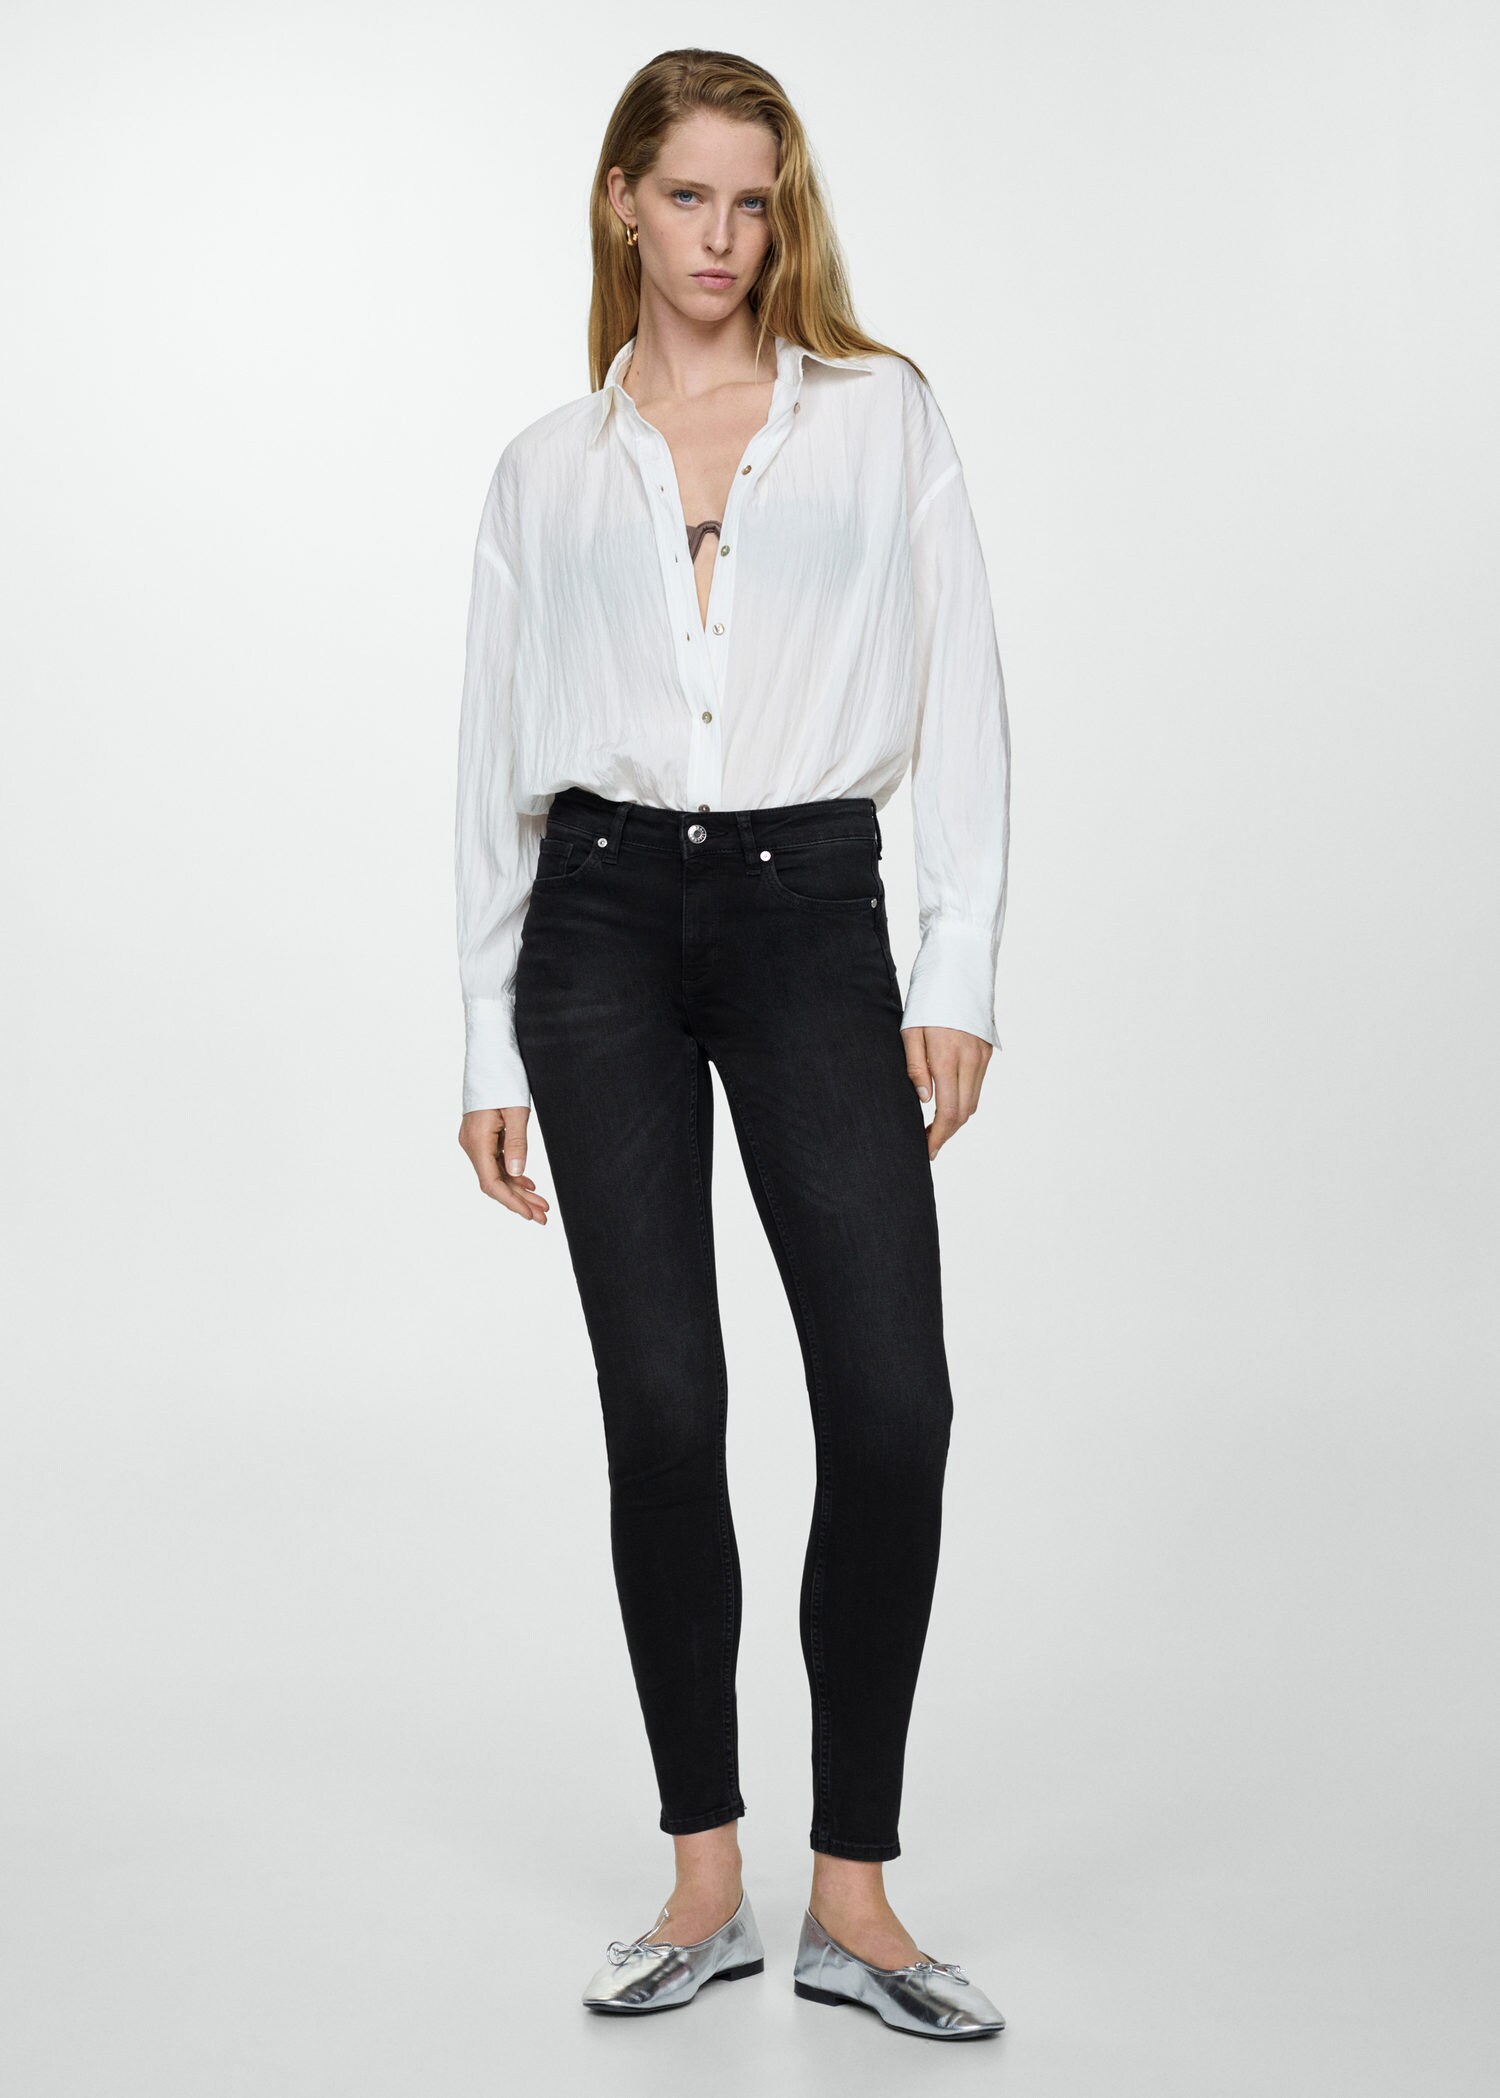 The Worst & Best Zara Jeans Pt.1 | Huge Zara Denim Try On For Pear Shaped  Women - YouTube